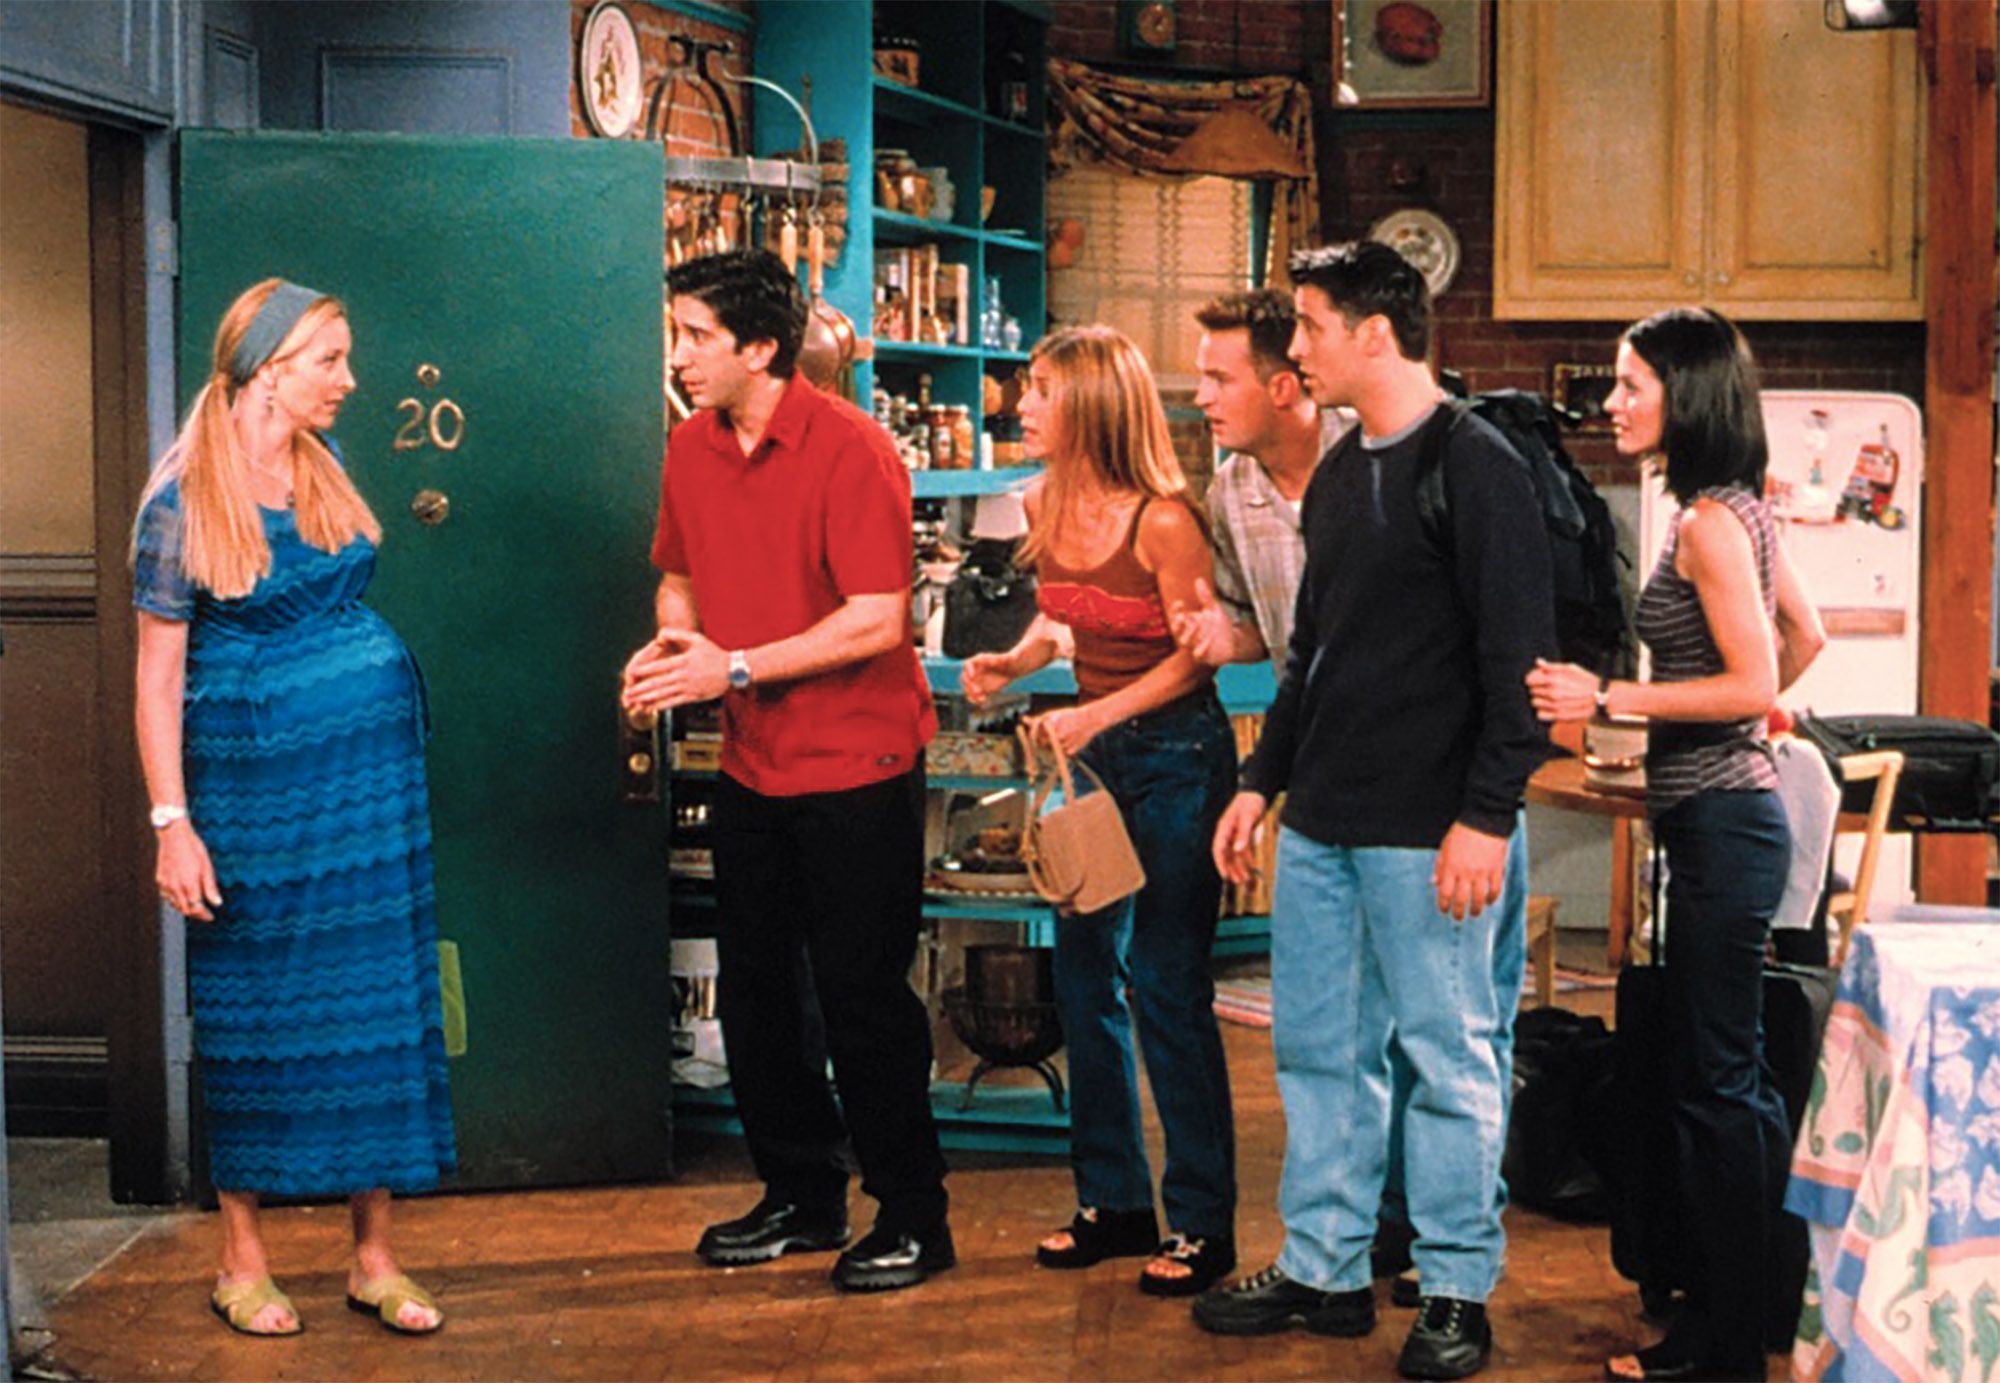 Dónde ver la serie 'Friends' en streaming y televisión